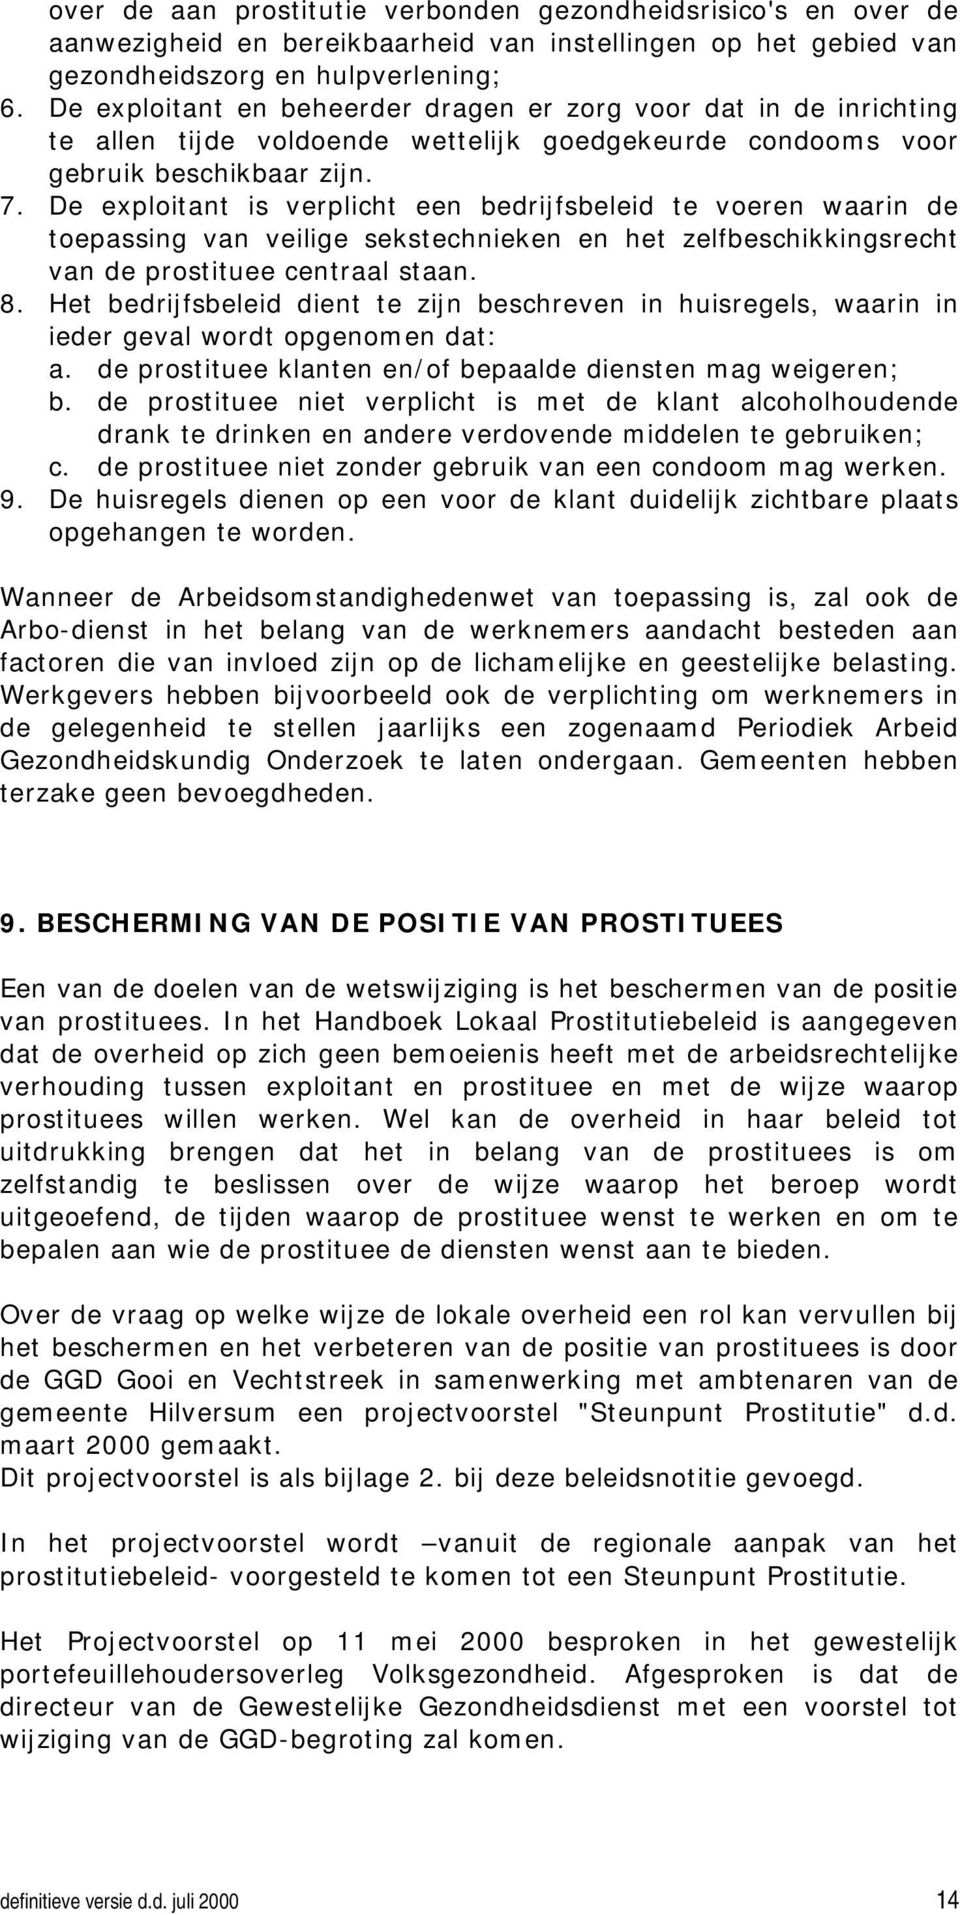 De exploitant is verplicht een bedrijfsbeleid te voeren waarin de toepassing van veilige sekstechnieken en het zelfbeschikkingsrecht van de prostituee centraal staan. 8.